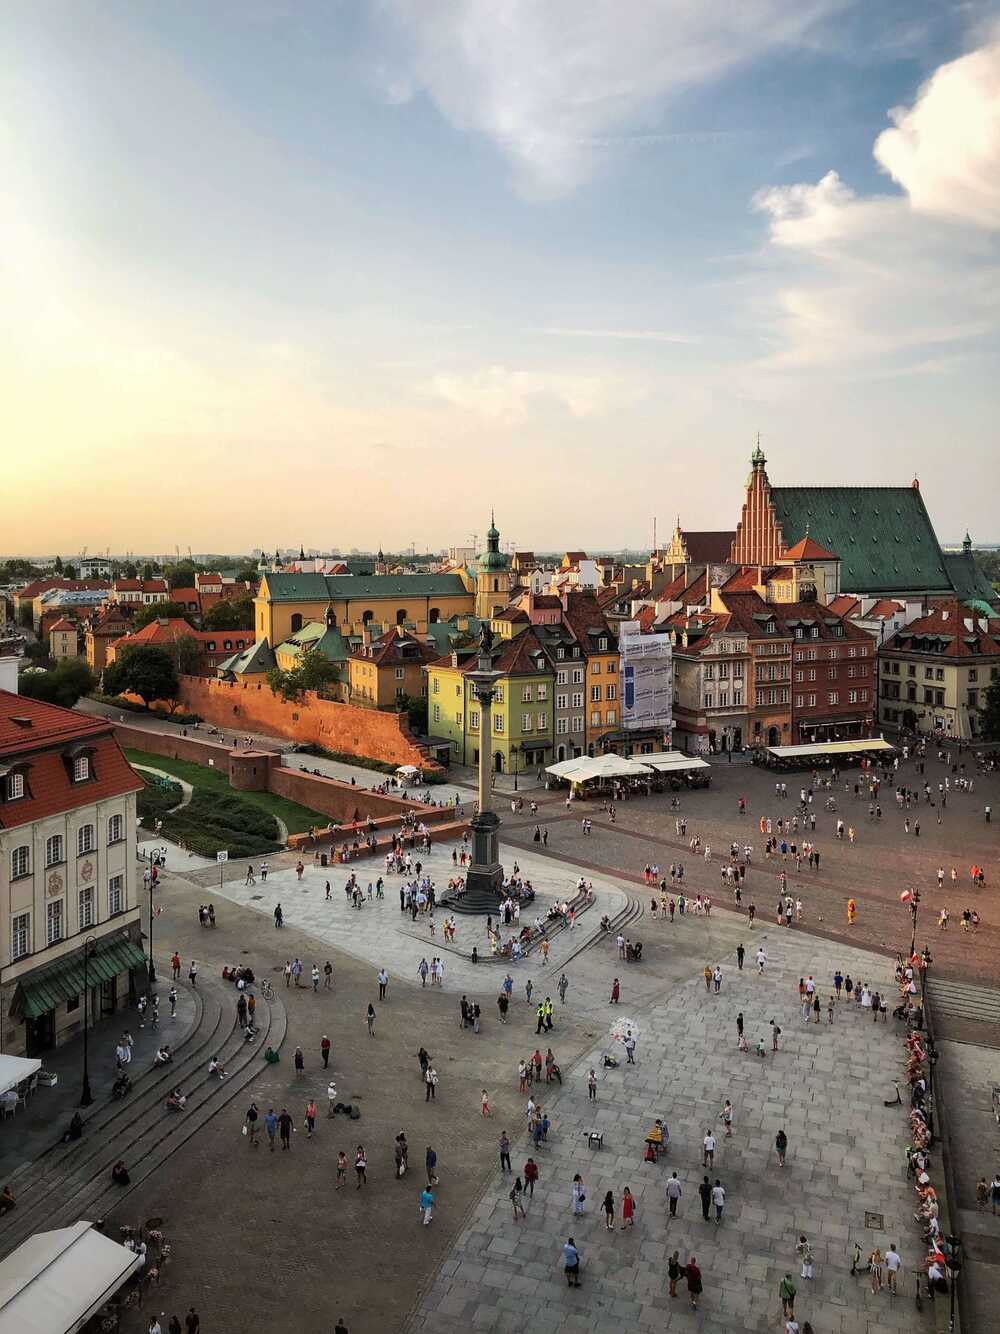 Εικόνα από Πολωνία σε δημόσιο χώρο από ψηλά φαίνεται πλατεία και κόσμος